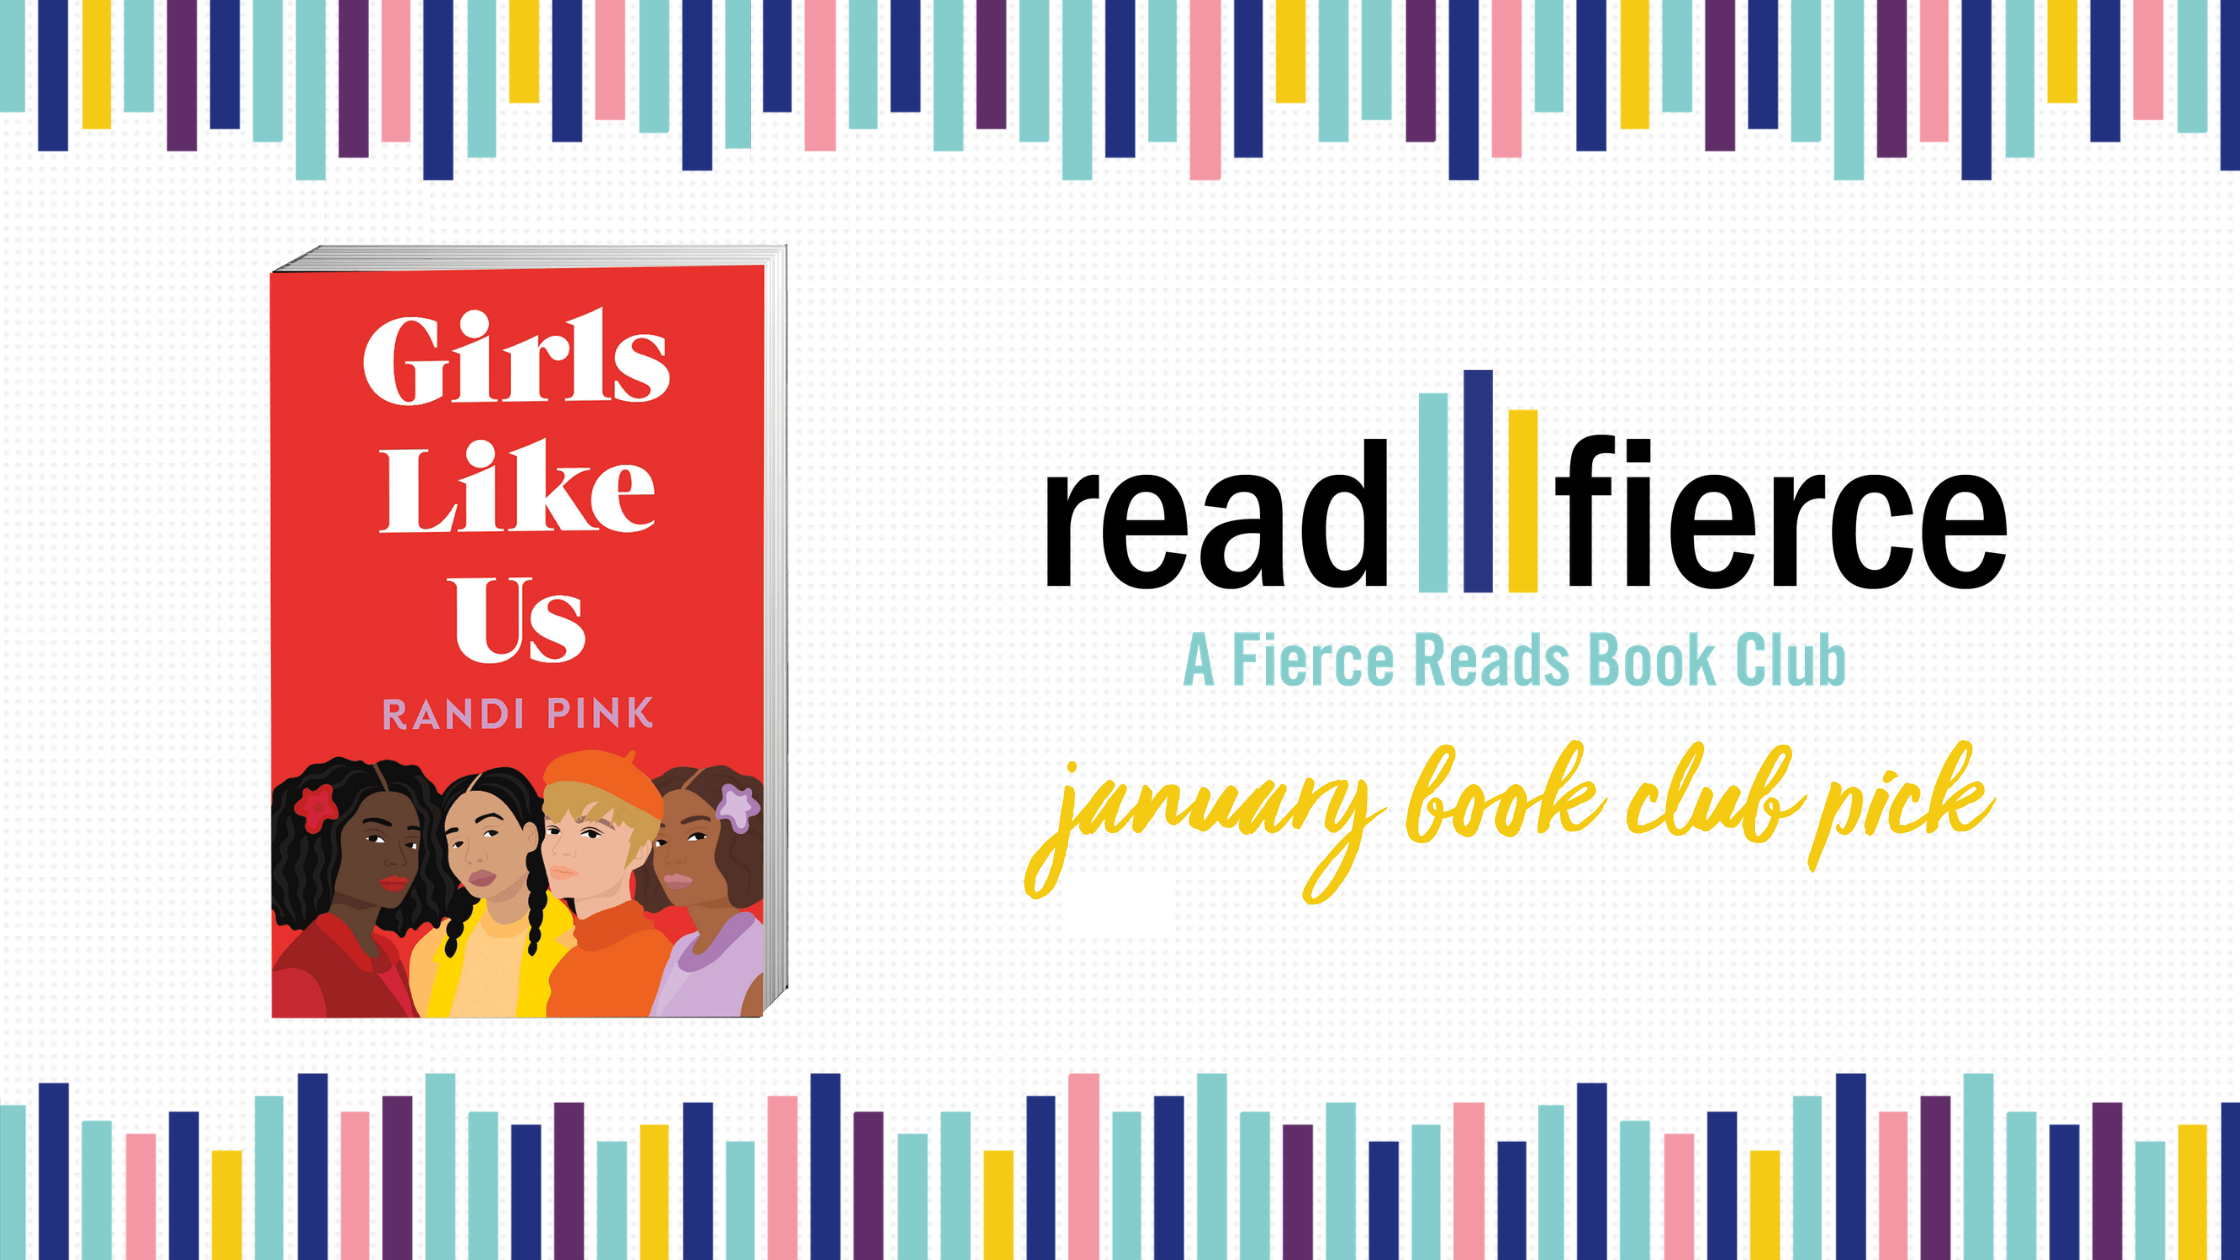 January 2021 Read Fierce Book Club Pick